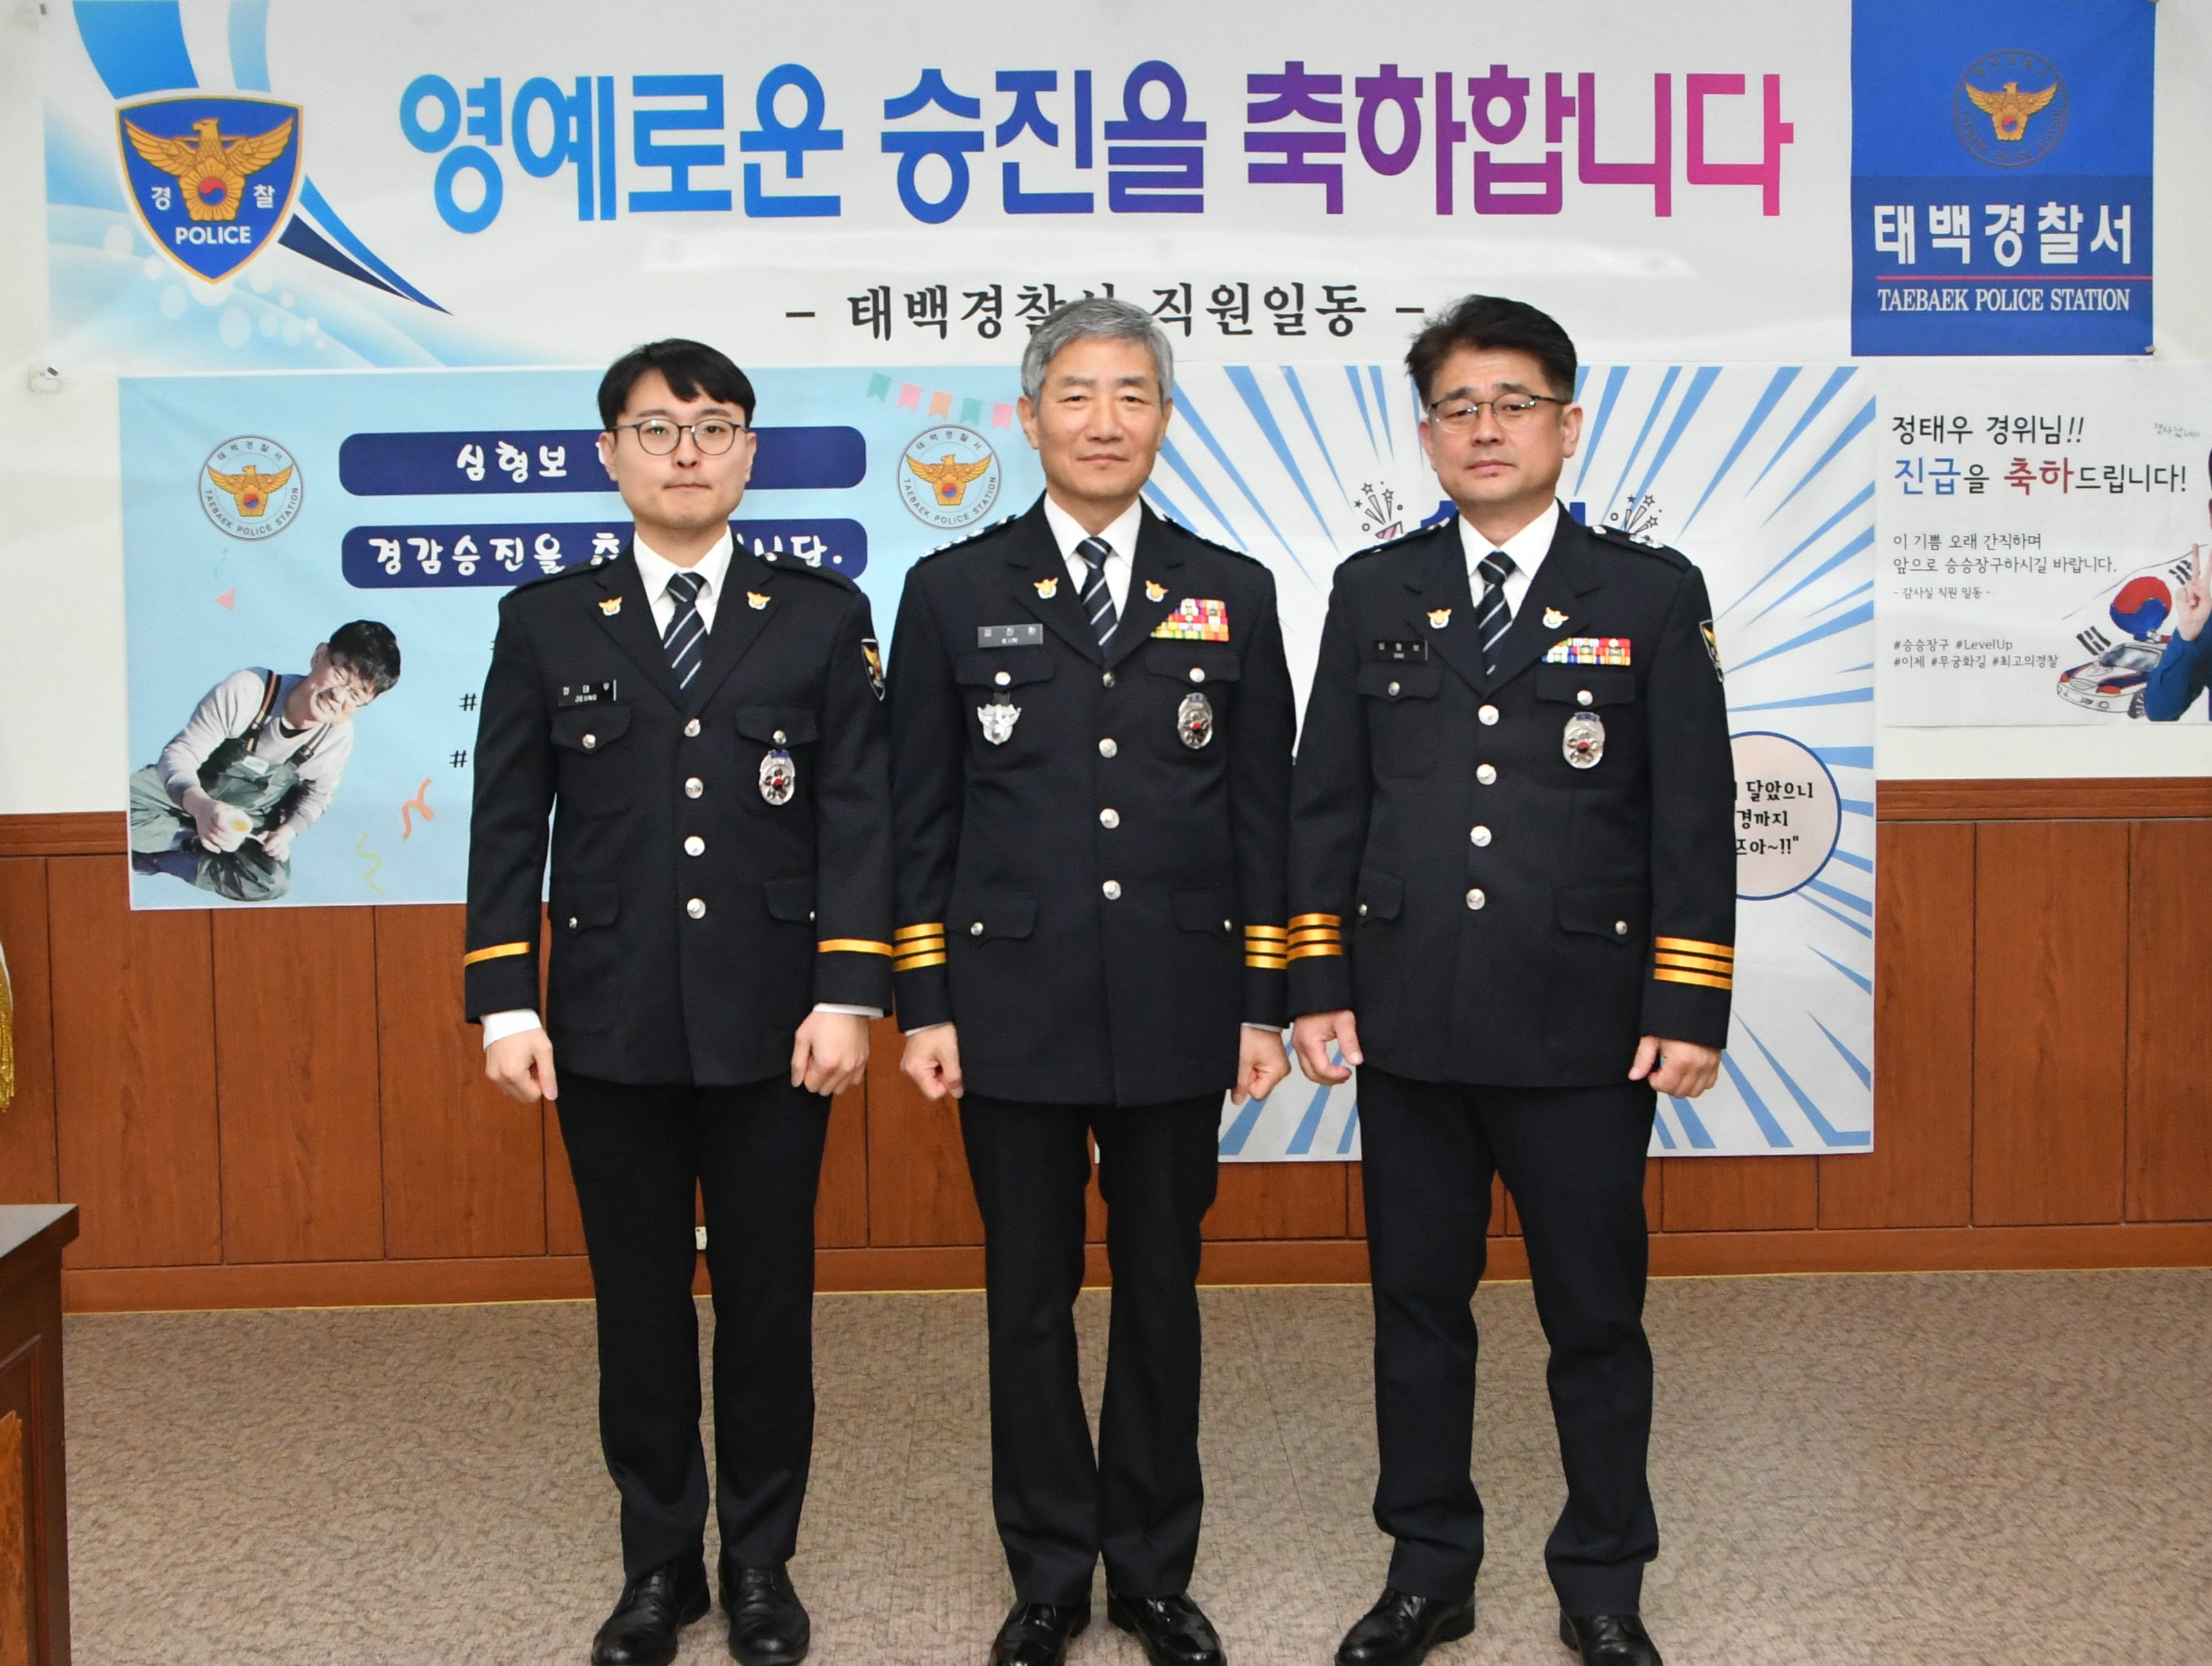 태백경찰서,승진임용식 개최-승진